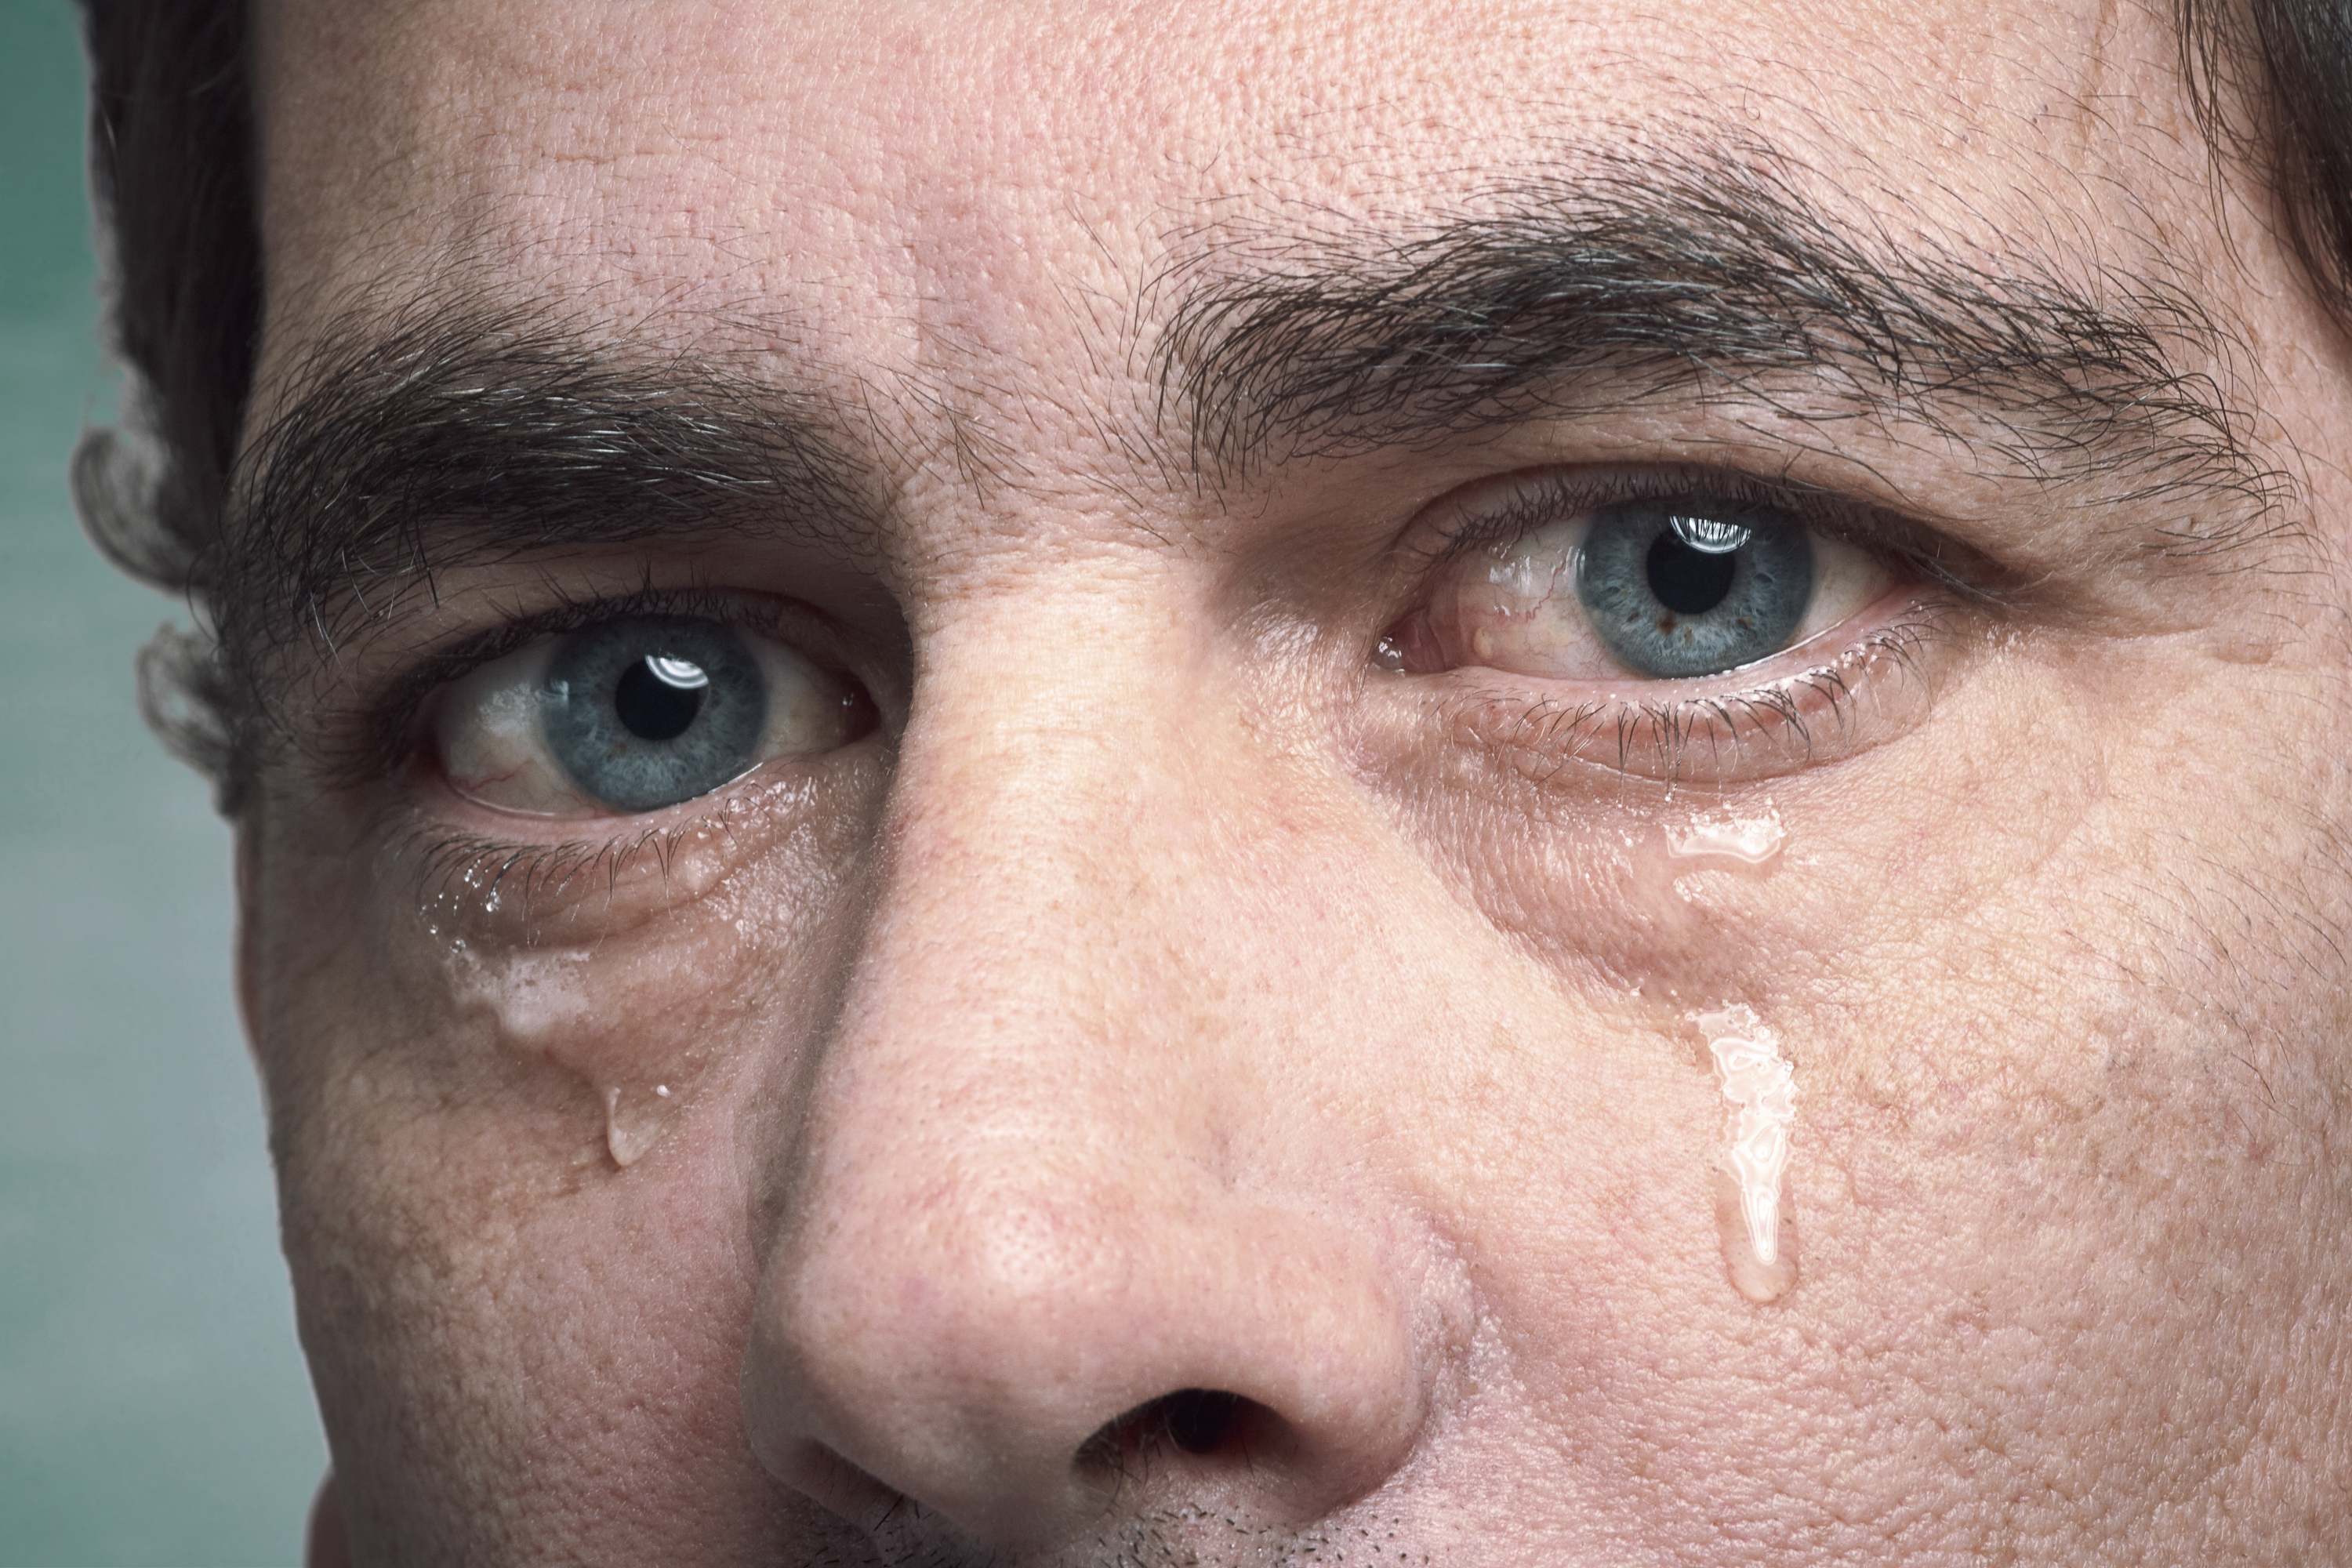 Guia fuga Estado Por qué se inflaman los ojos al llorar y cómo reducir ese efecto